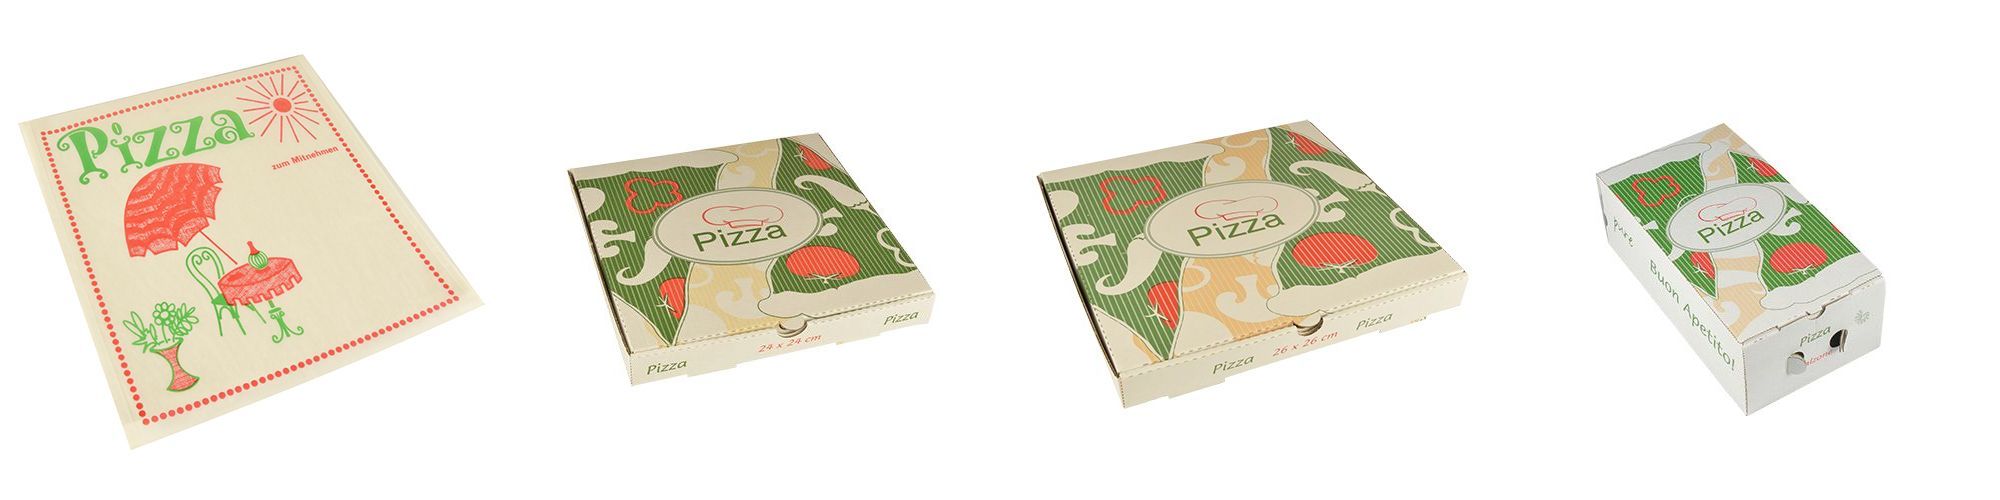 Pizzakartons und Zubehör